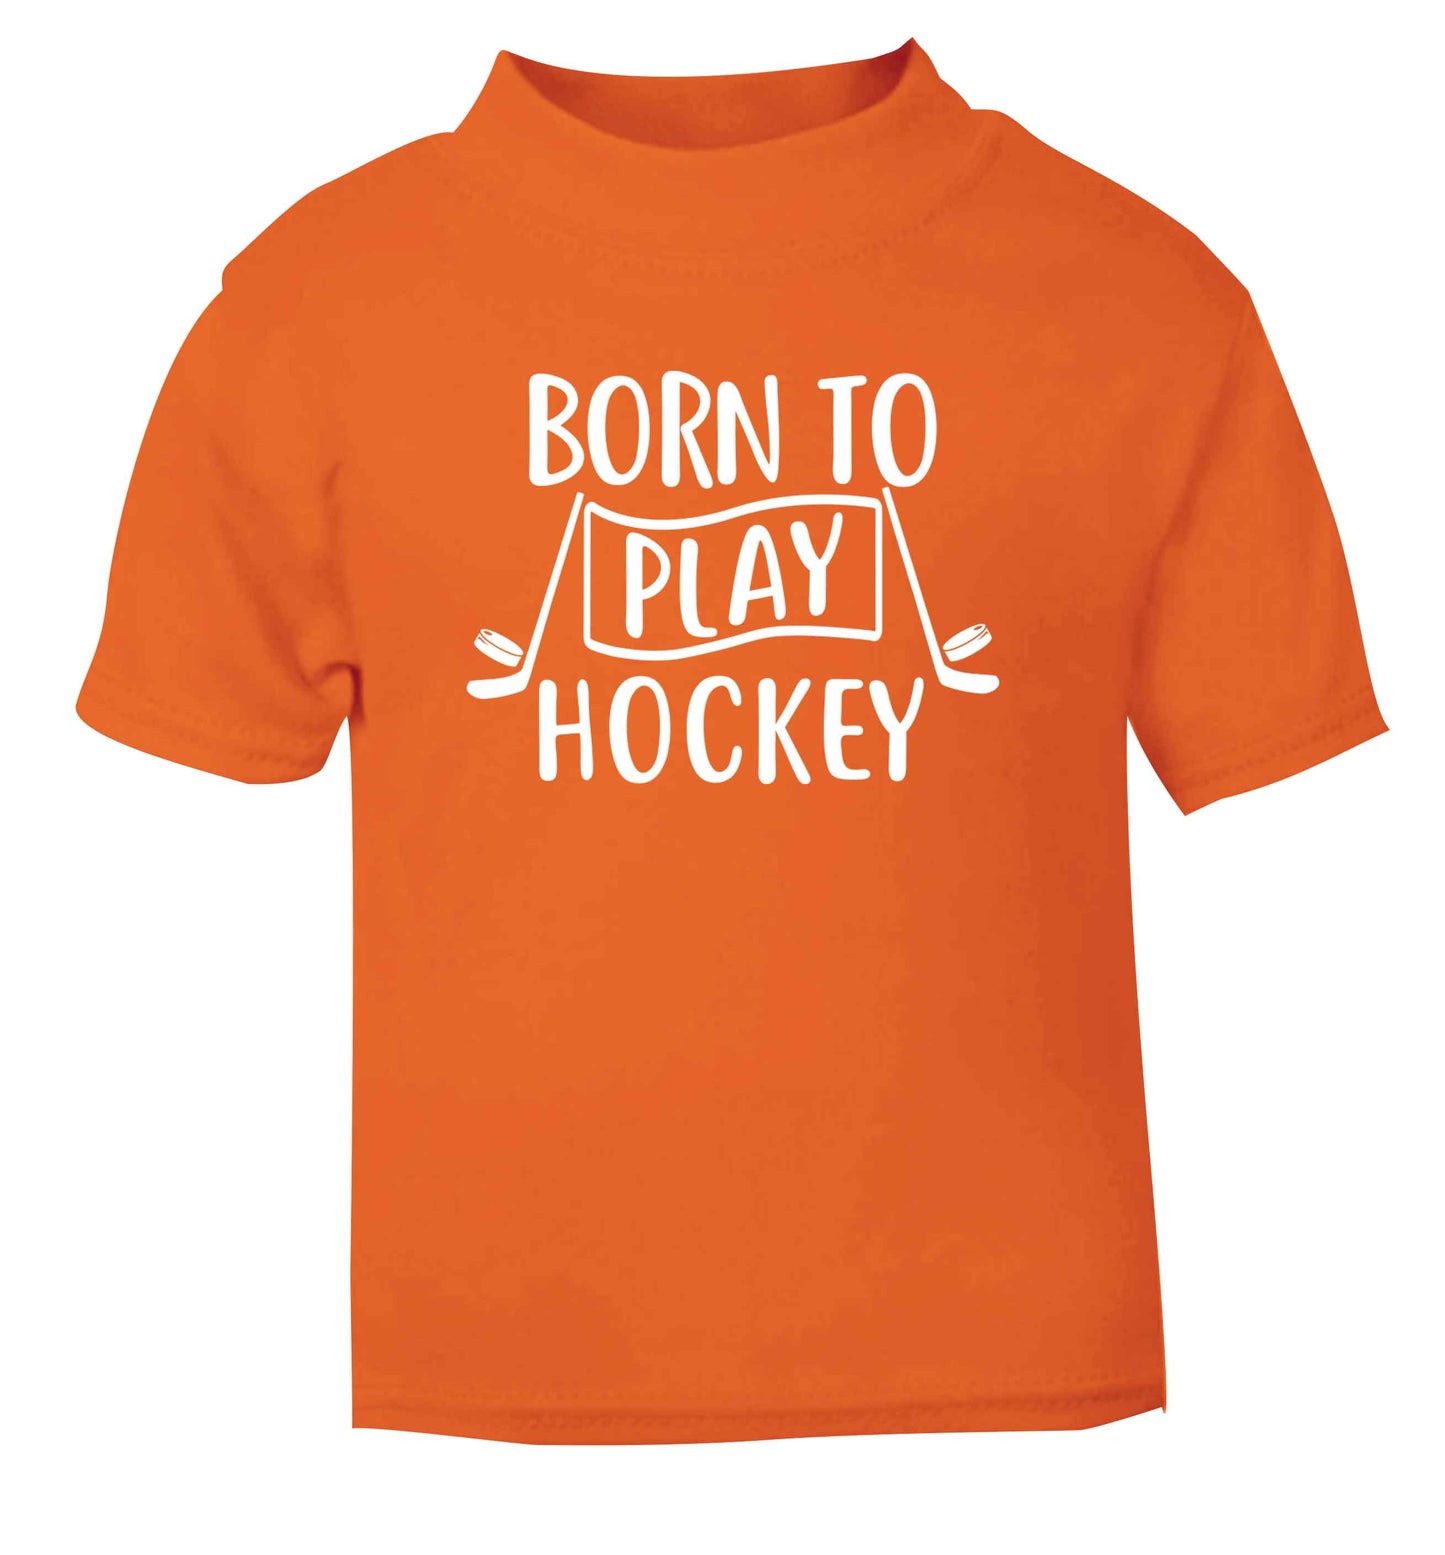 Born to play hockey orange Baby Toddler Tshirt 2 Years